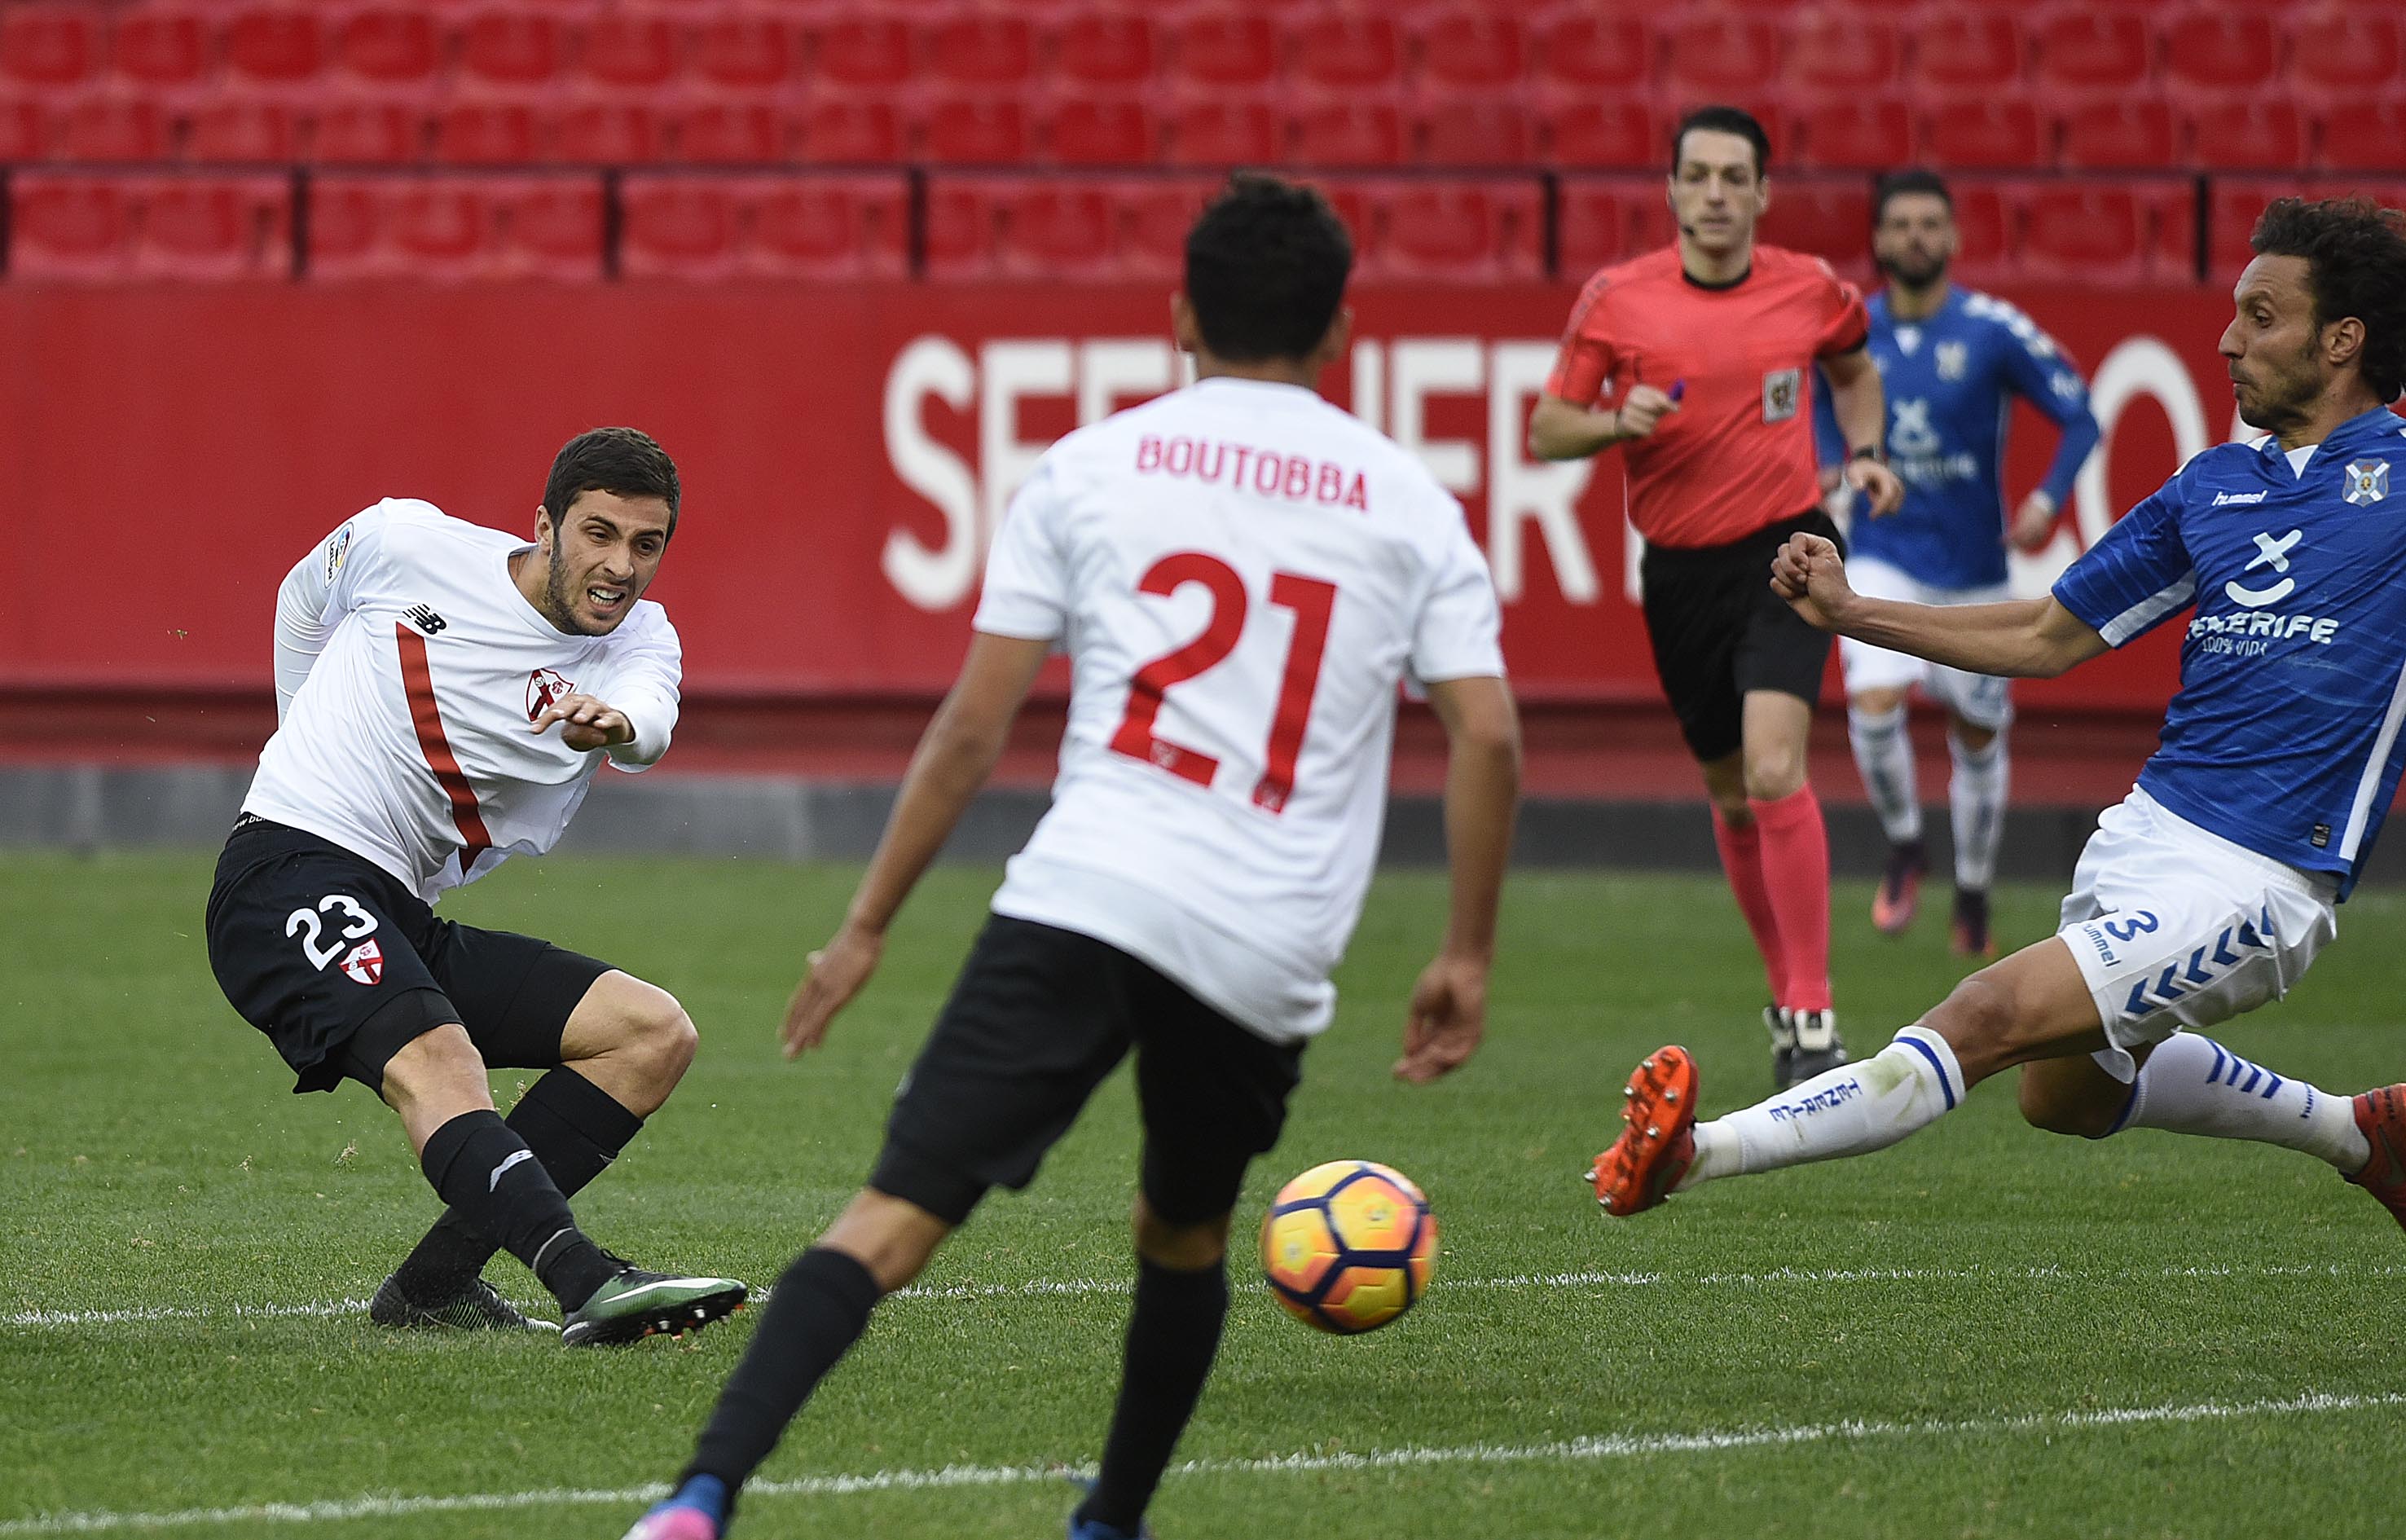 Aburjania del Sevilla Atlético ante el CD Tenerife